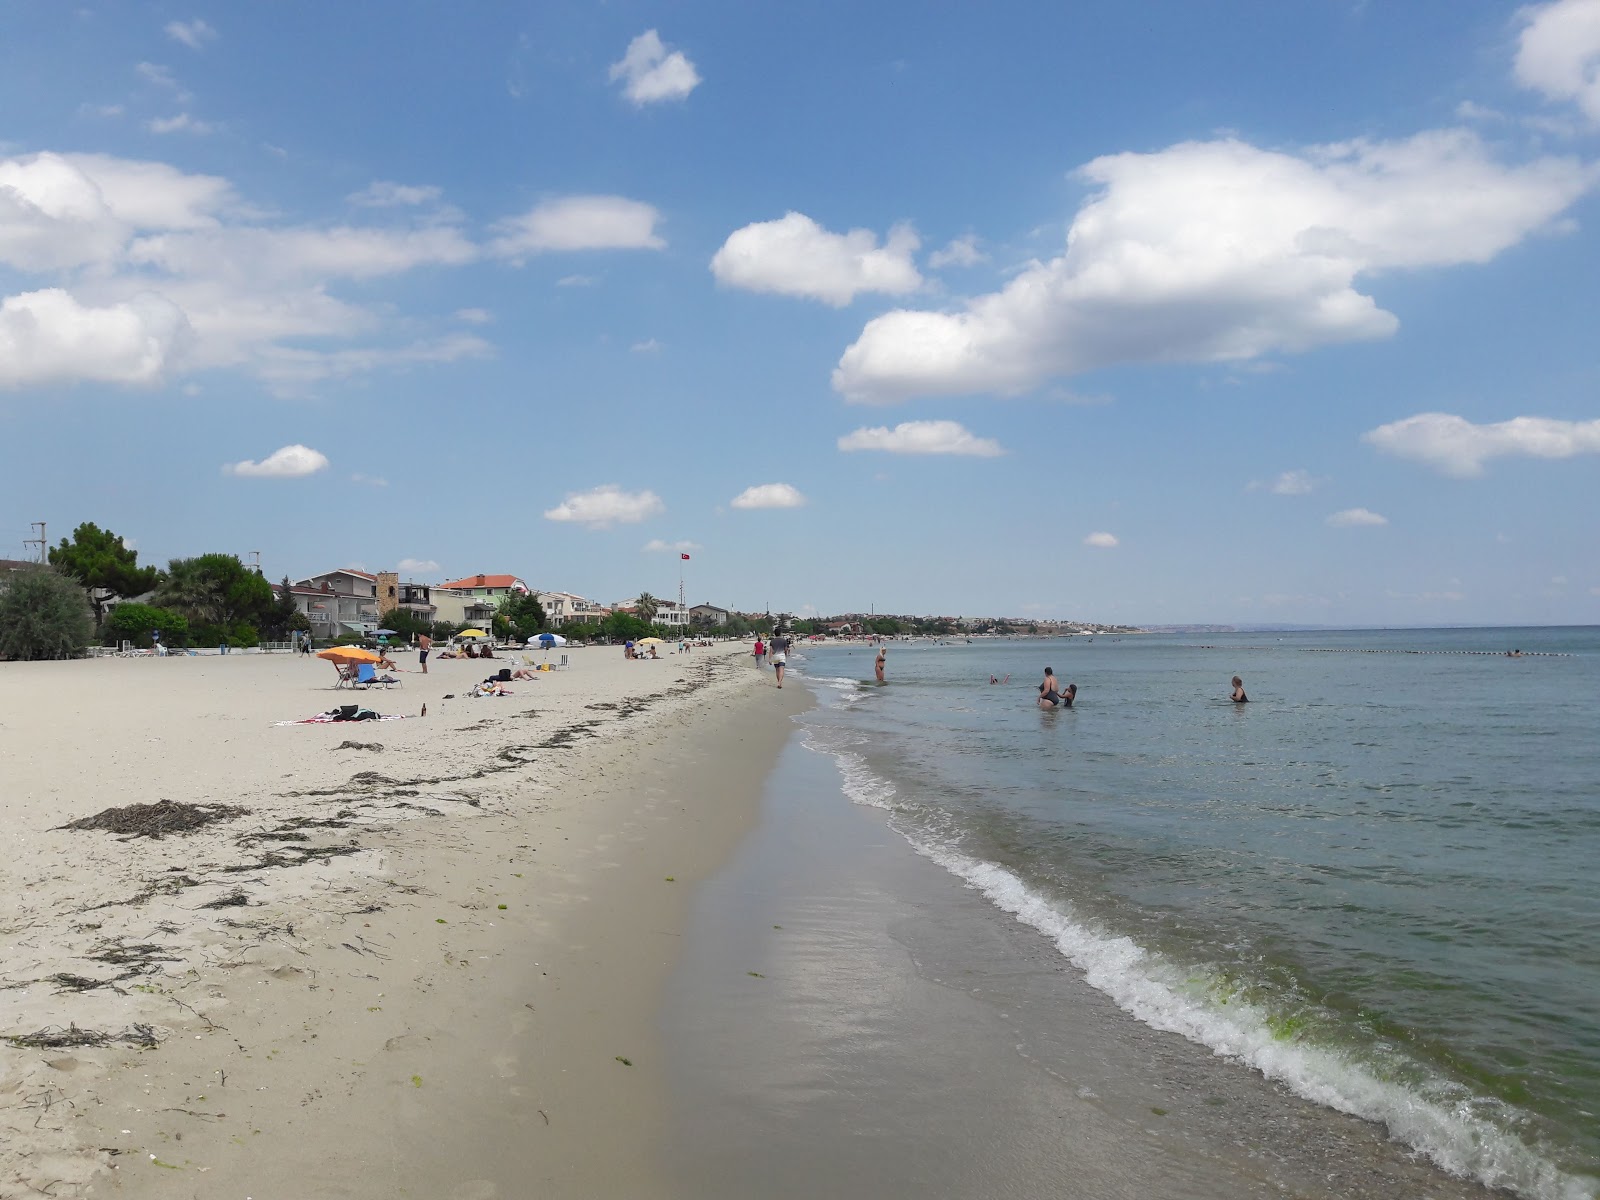 Fotografie cu Ohri beach - locul popular printre cunoscătorii de relaxare